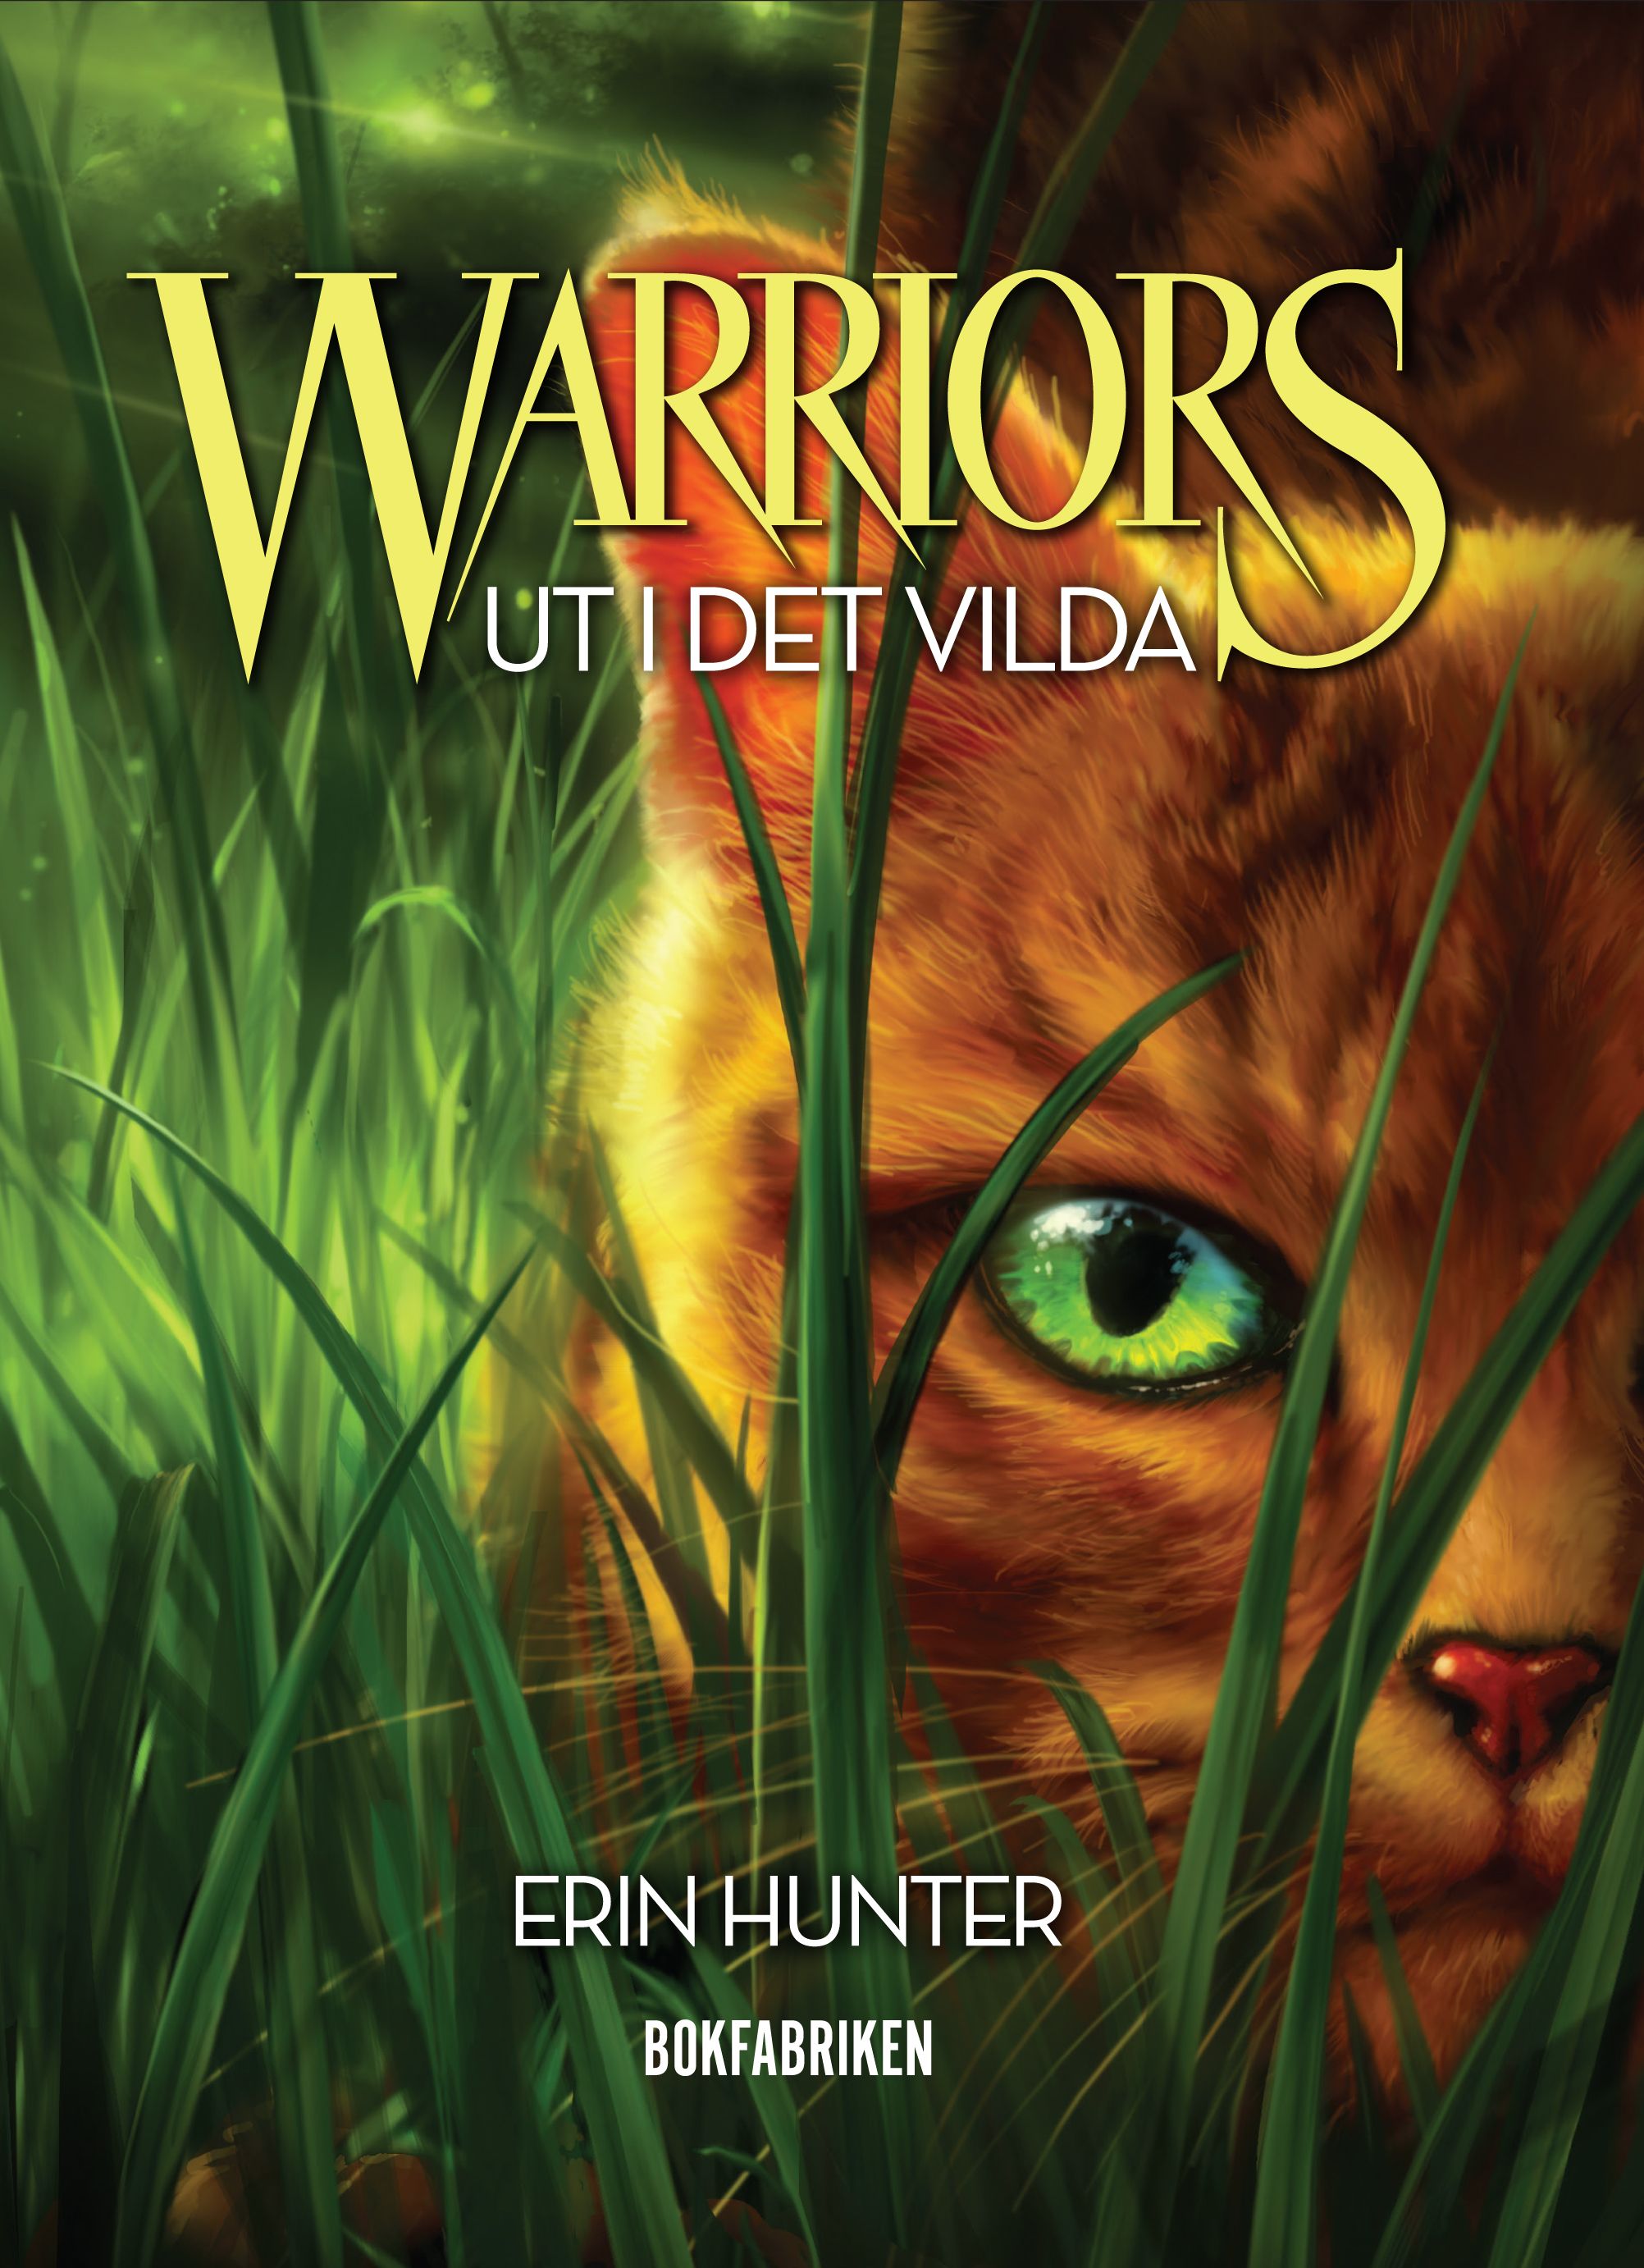 Warriors - Ut i det vilda, e-bog af Erin Hunter